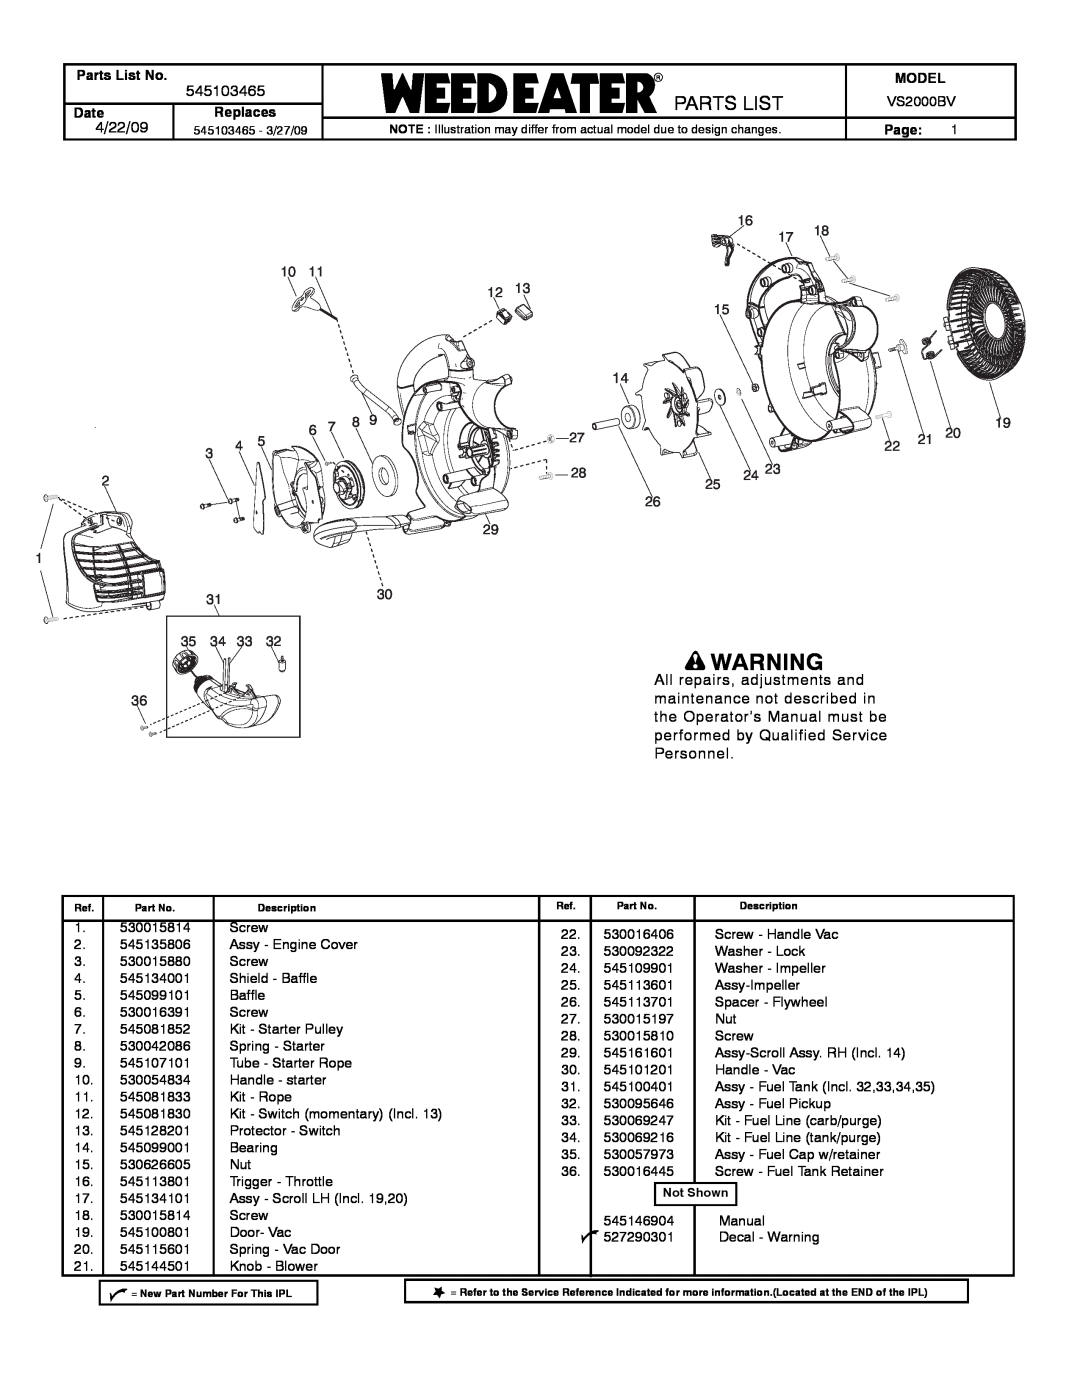 Poulan VS2000BV manual 545103465, Parts List No, DateReplaces, Model, Page 